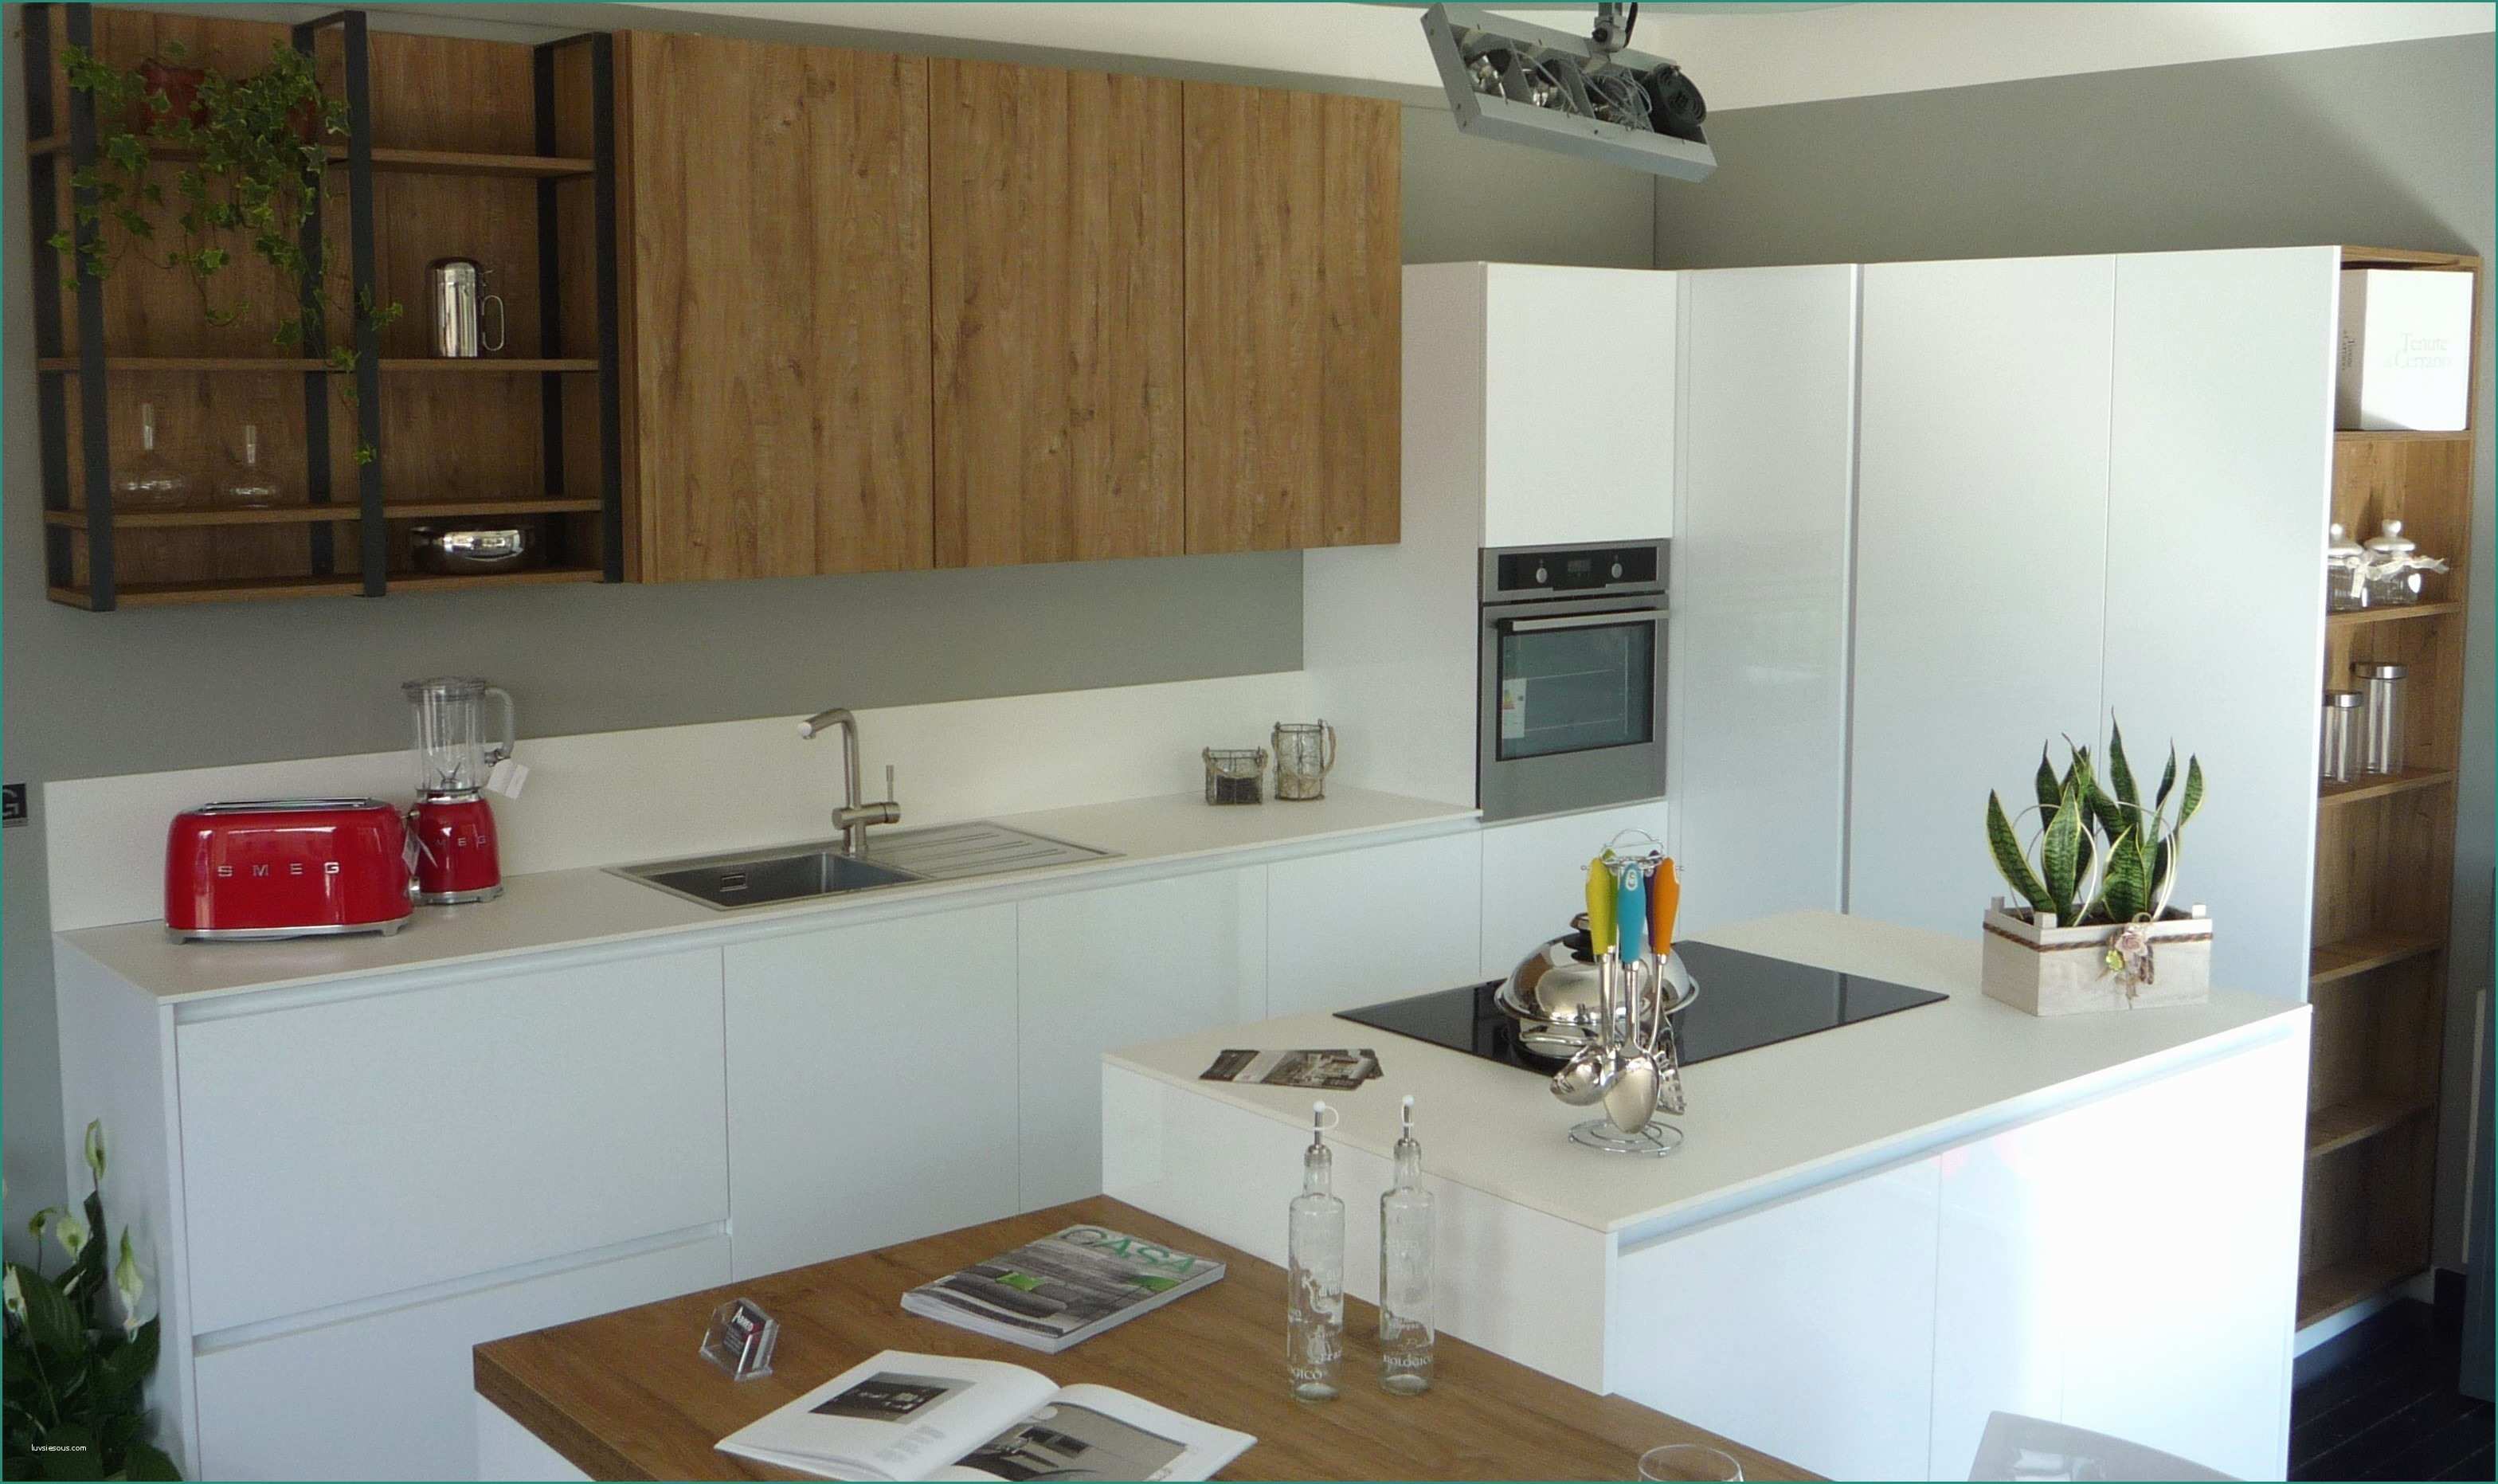 Cucine Moderne Con isola Prezzi E isole Cucina Ikea Idee Di Design Decorativo Per Interni Domestici